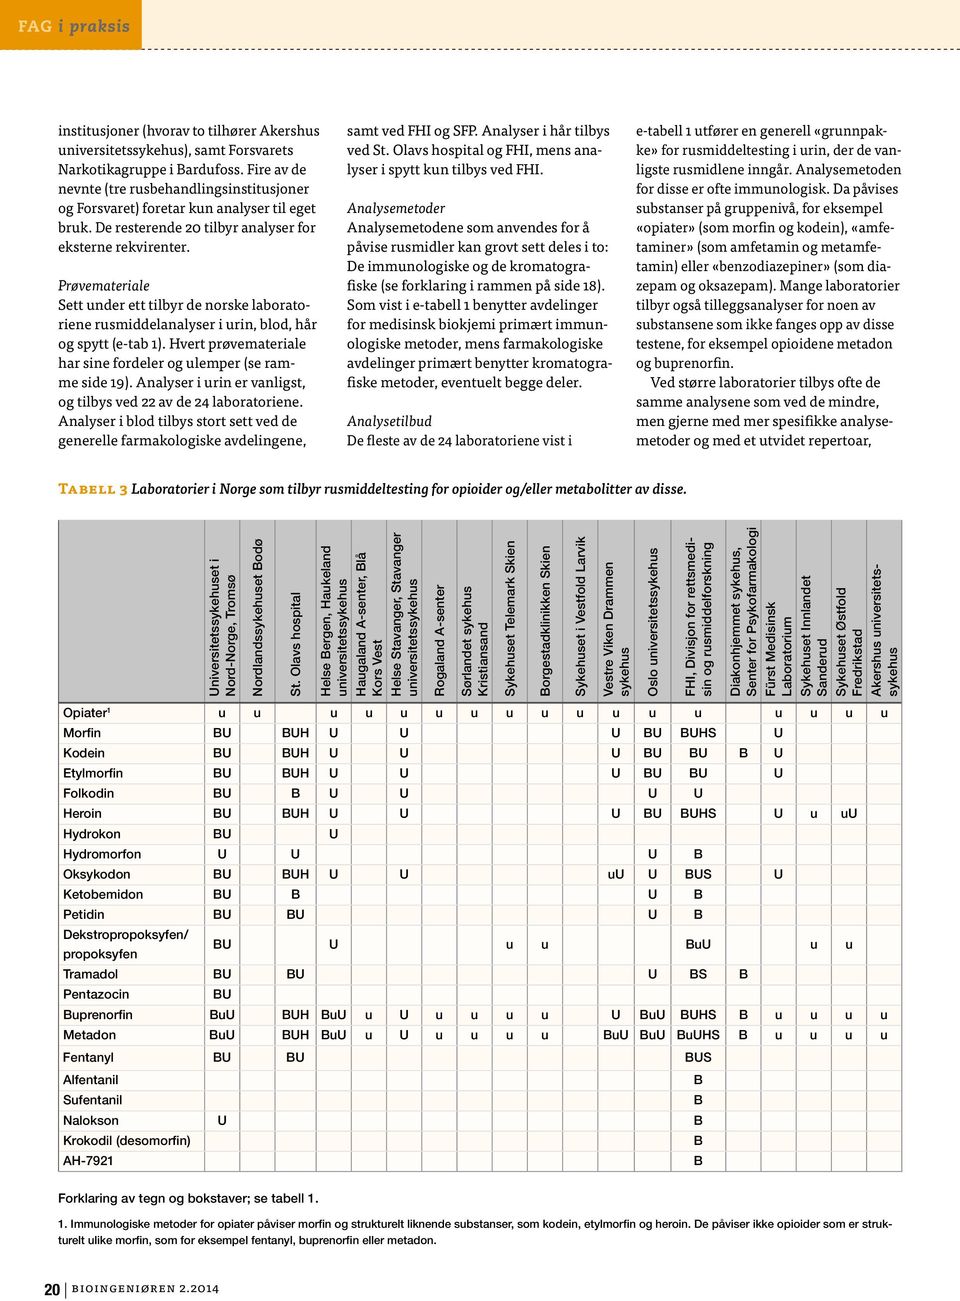 Hvert prøvemateriale har sine fordeler og ulemper (se ramme side 19). Analyser i urin er vanligst, og tilbys ved 22 av de 24 laboratoriene.